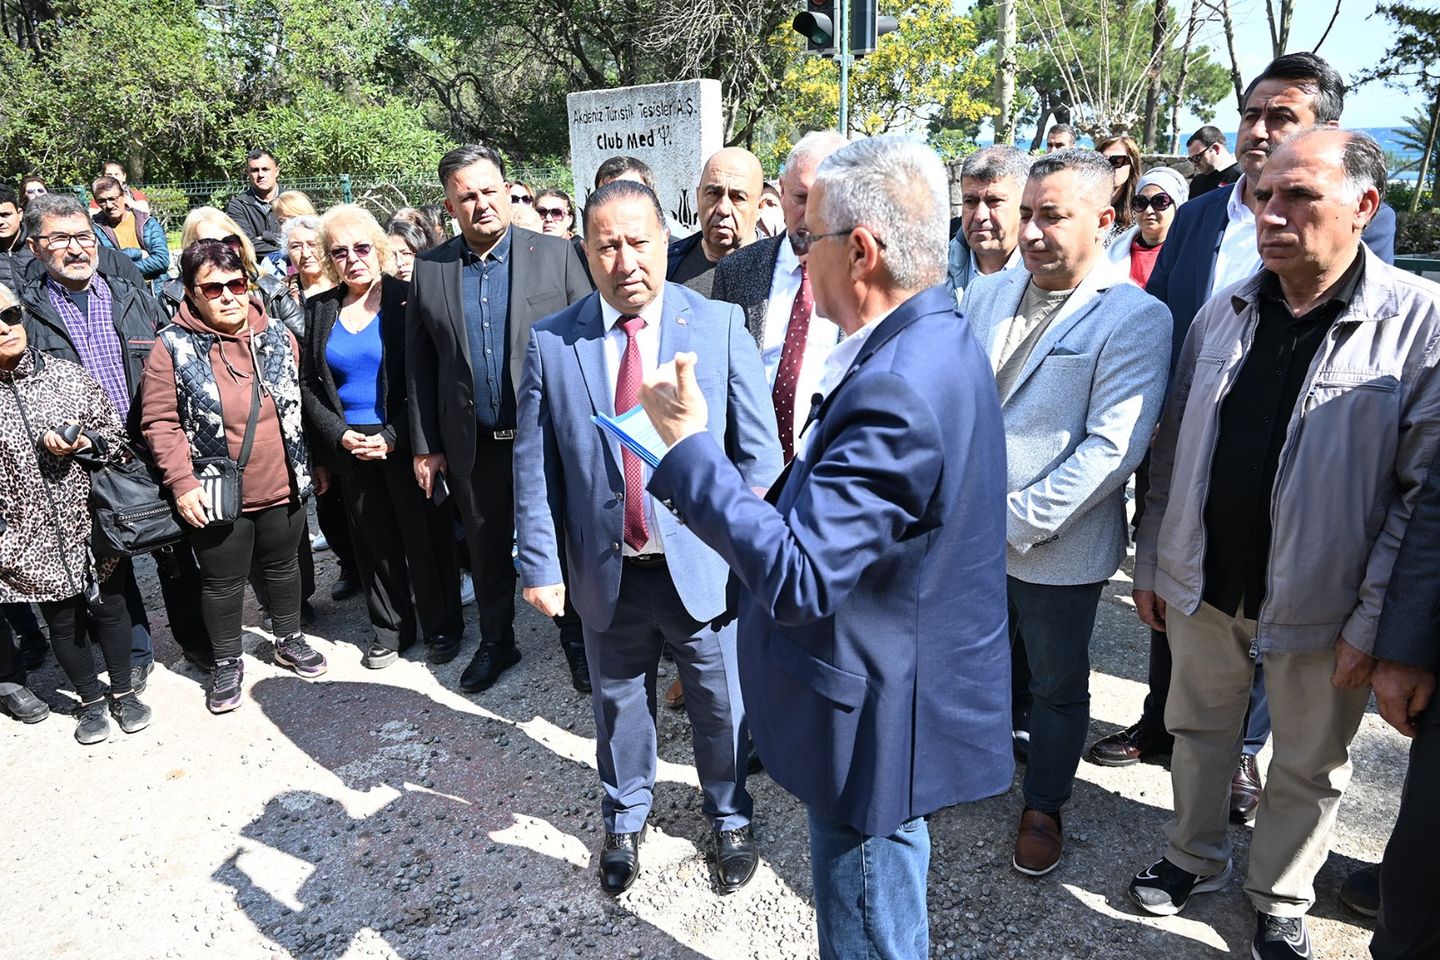 Kemer Belediye Başkanı, Çalış Tepe'deki doğal yaşamın korunması için kararlılıkla hareket edeceklerini açıkladı.